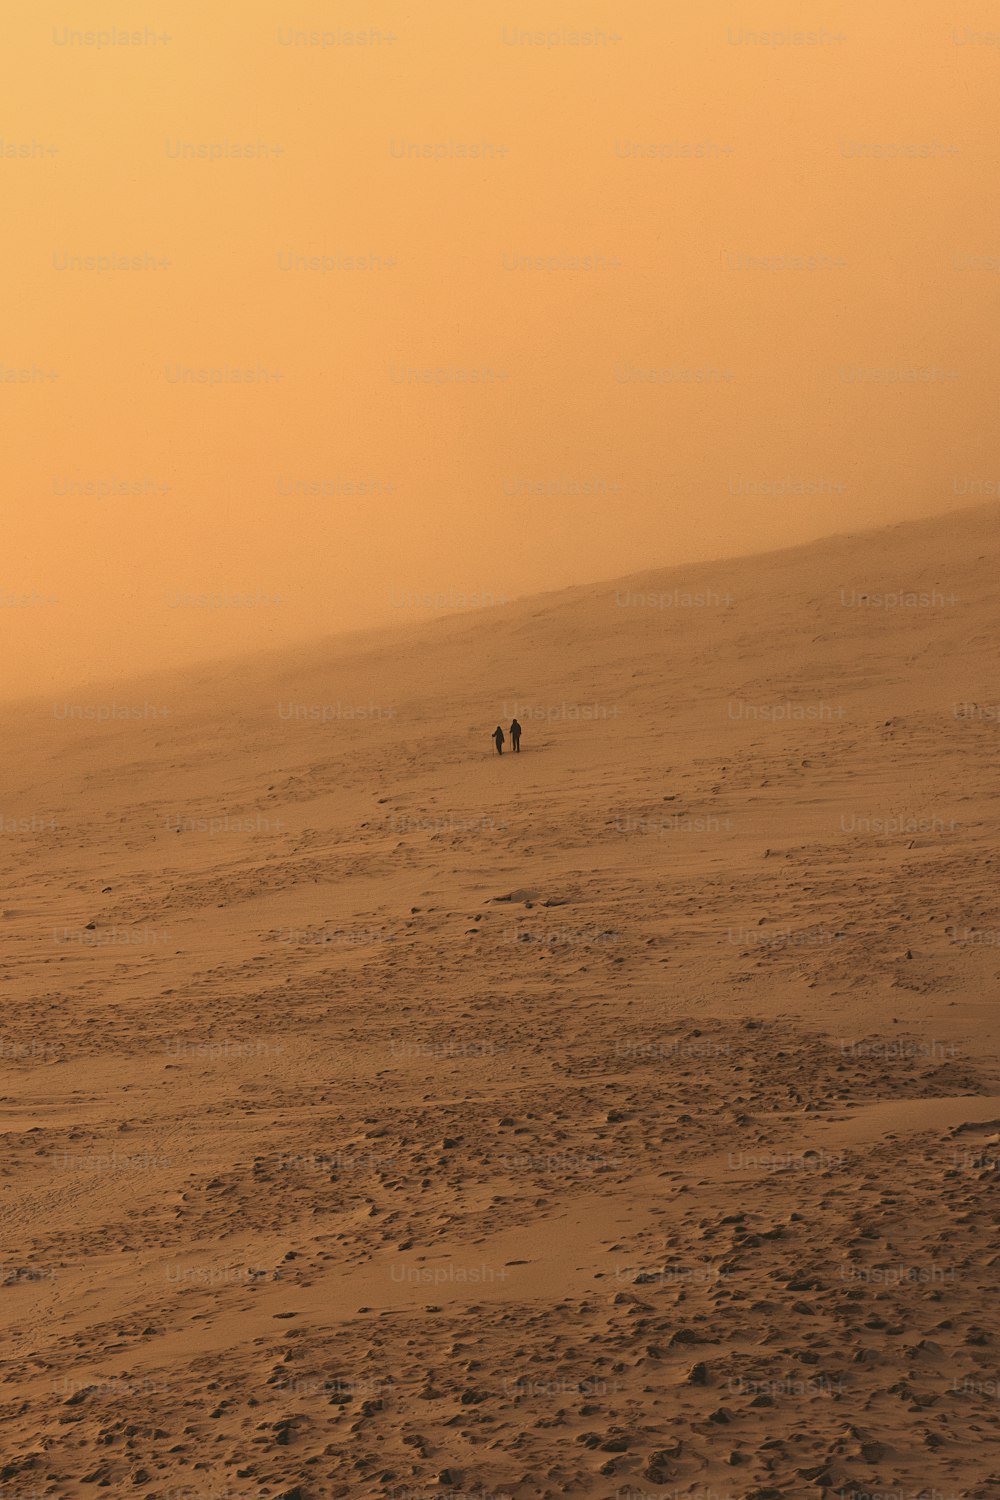 a couple of people walking across a sandy field